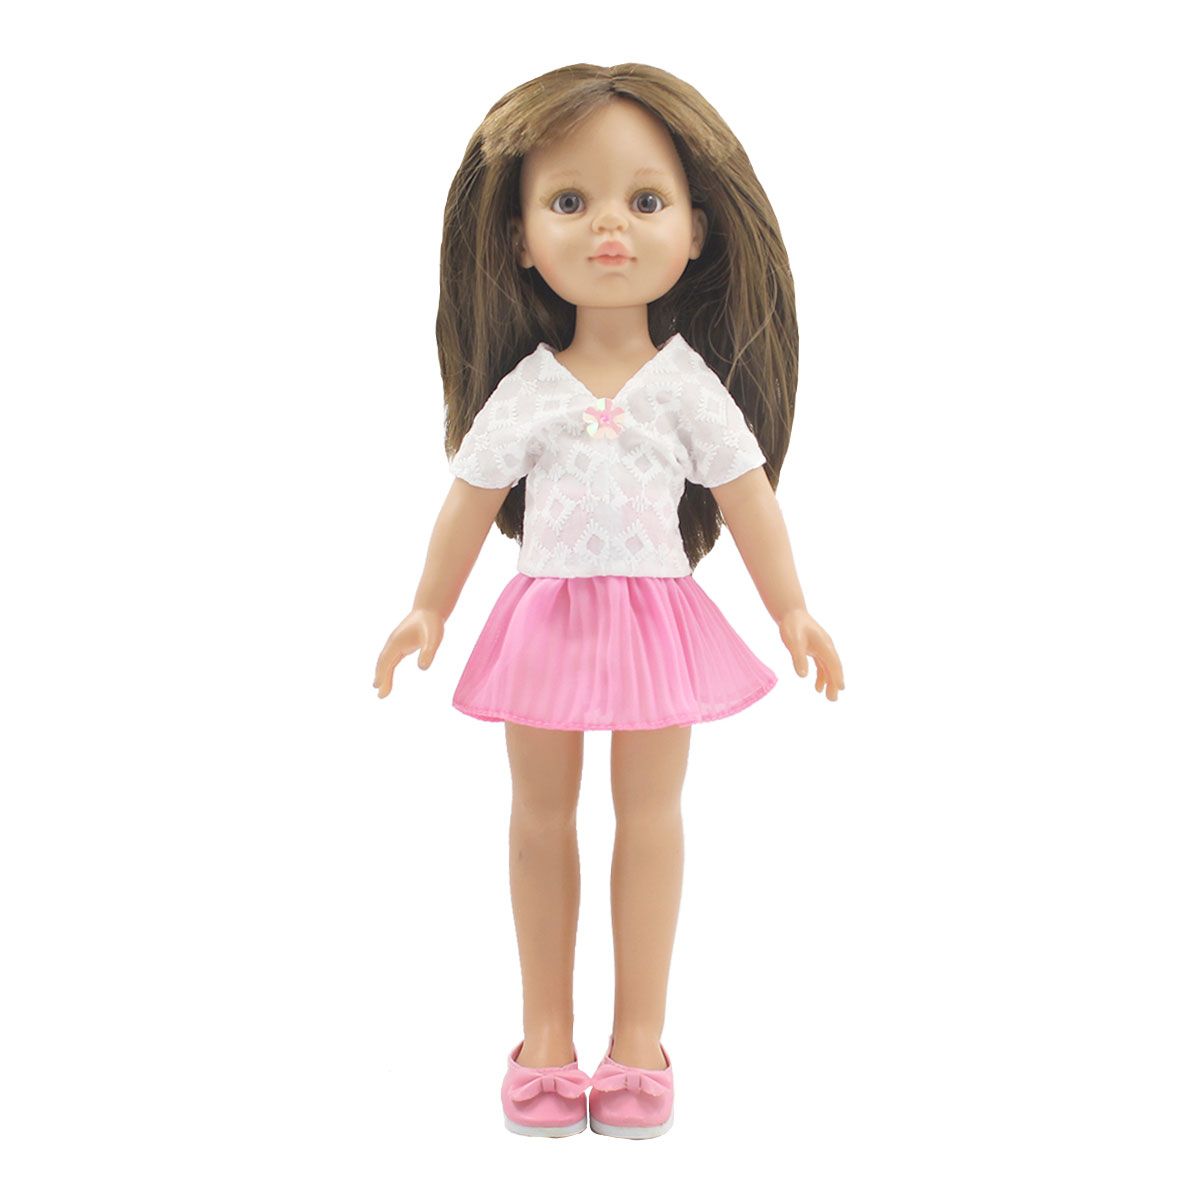 Одежда Dolls Accessories для Паола Рейна и других кукол ростом 32 см Нежность